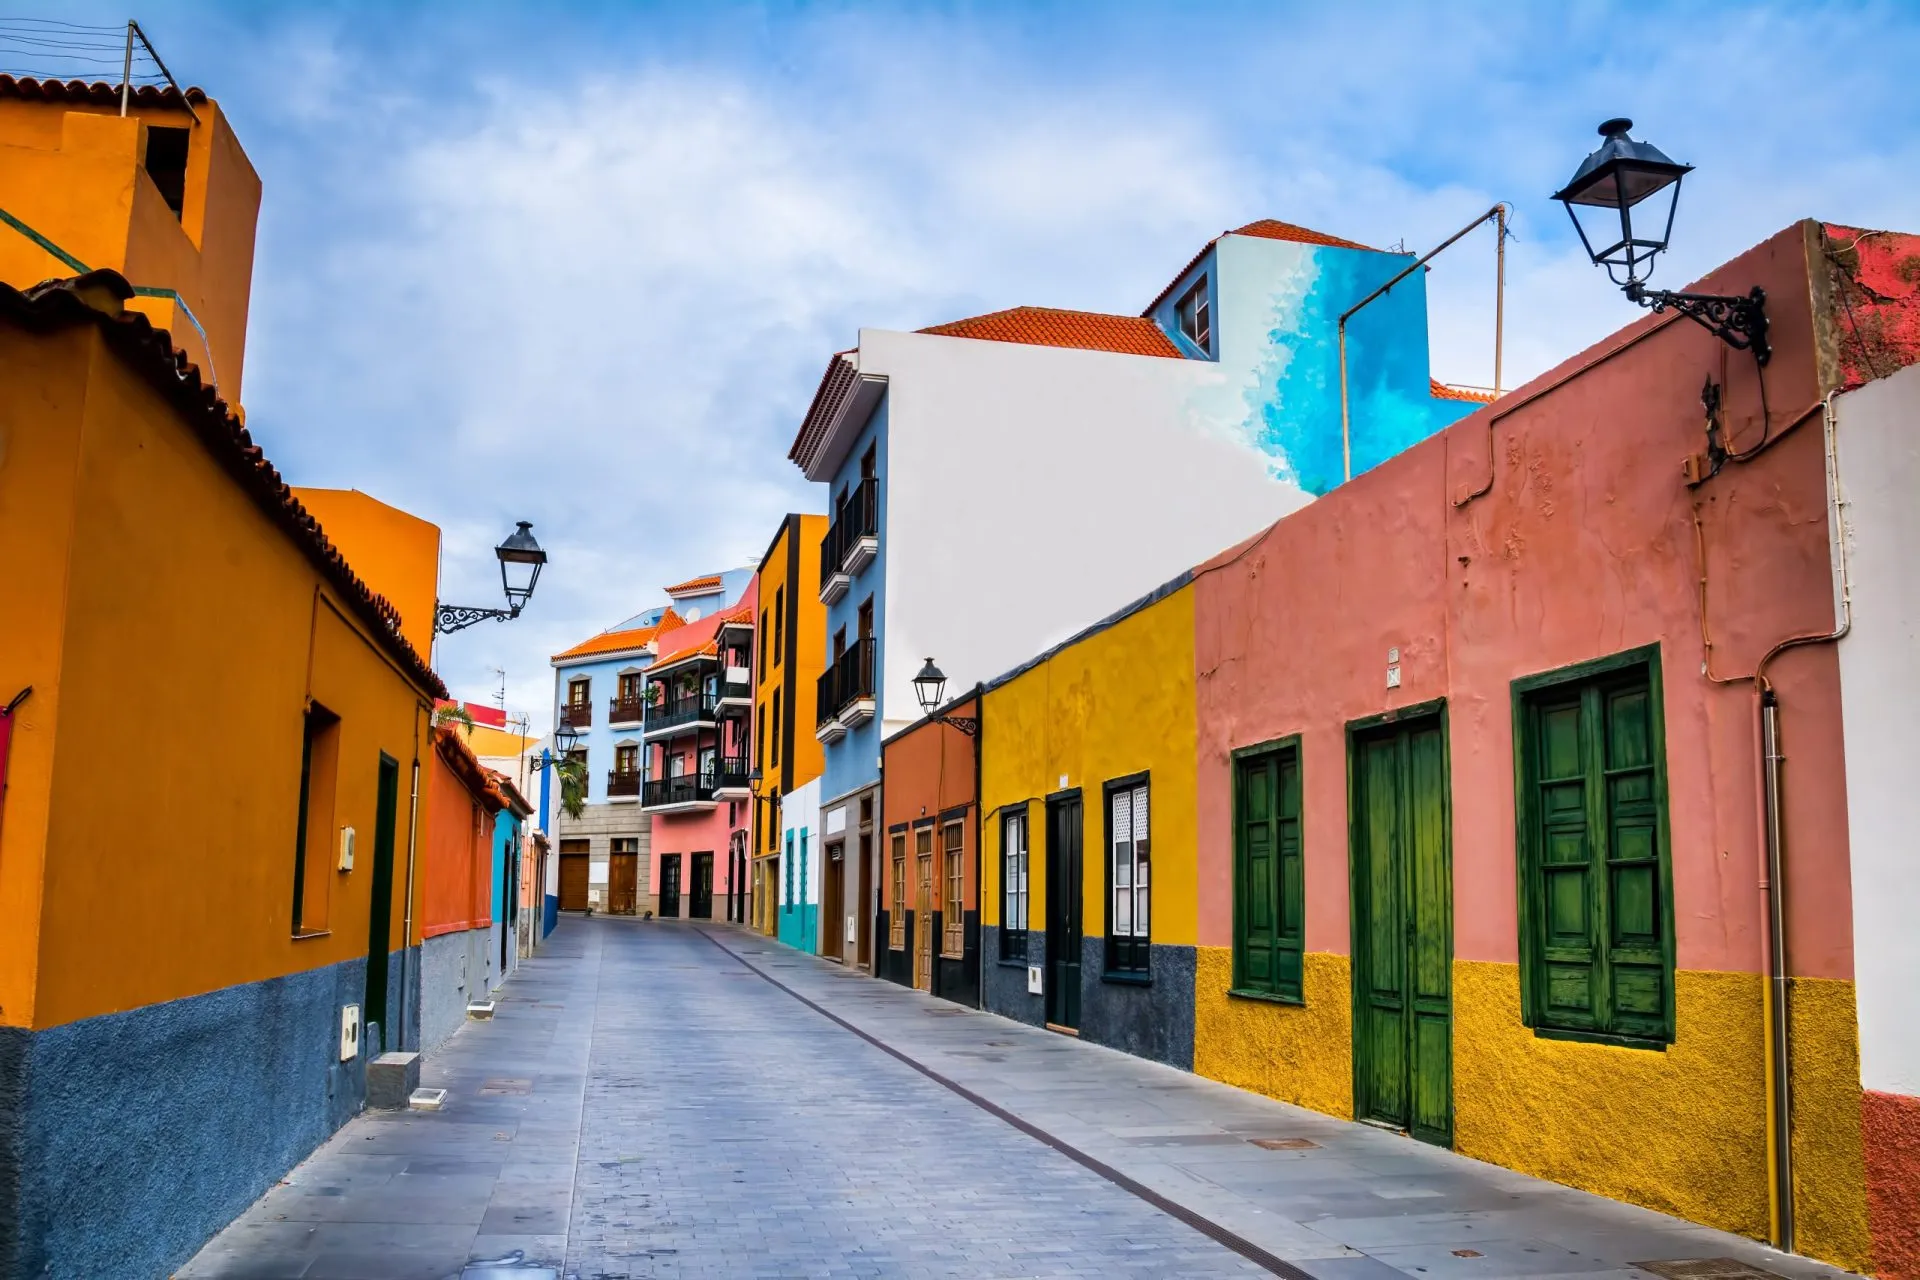 Bunte Häuser auf der Straße in der Stadt Puerto de la Cruz, Teneriffa, Kanarische Inseln, Spanien. Dies ist touristische Fußgängerzone in der Nähe des Ozeans gibt es viele Restaurants und Geschäfte